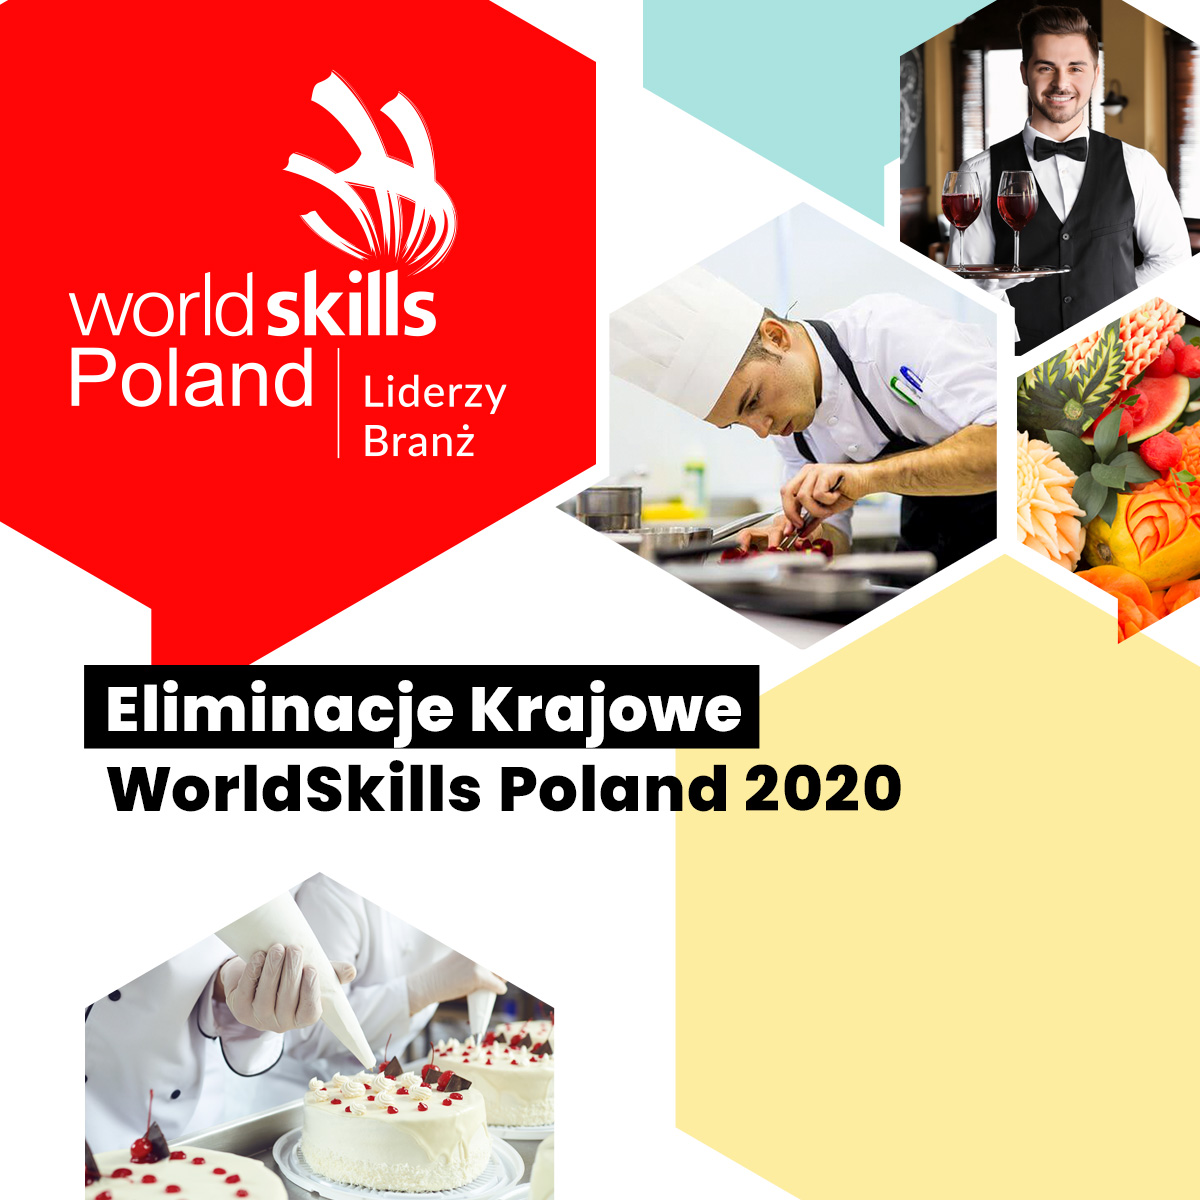 Worldskills Poland